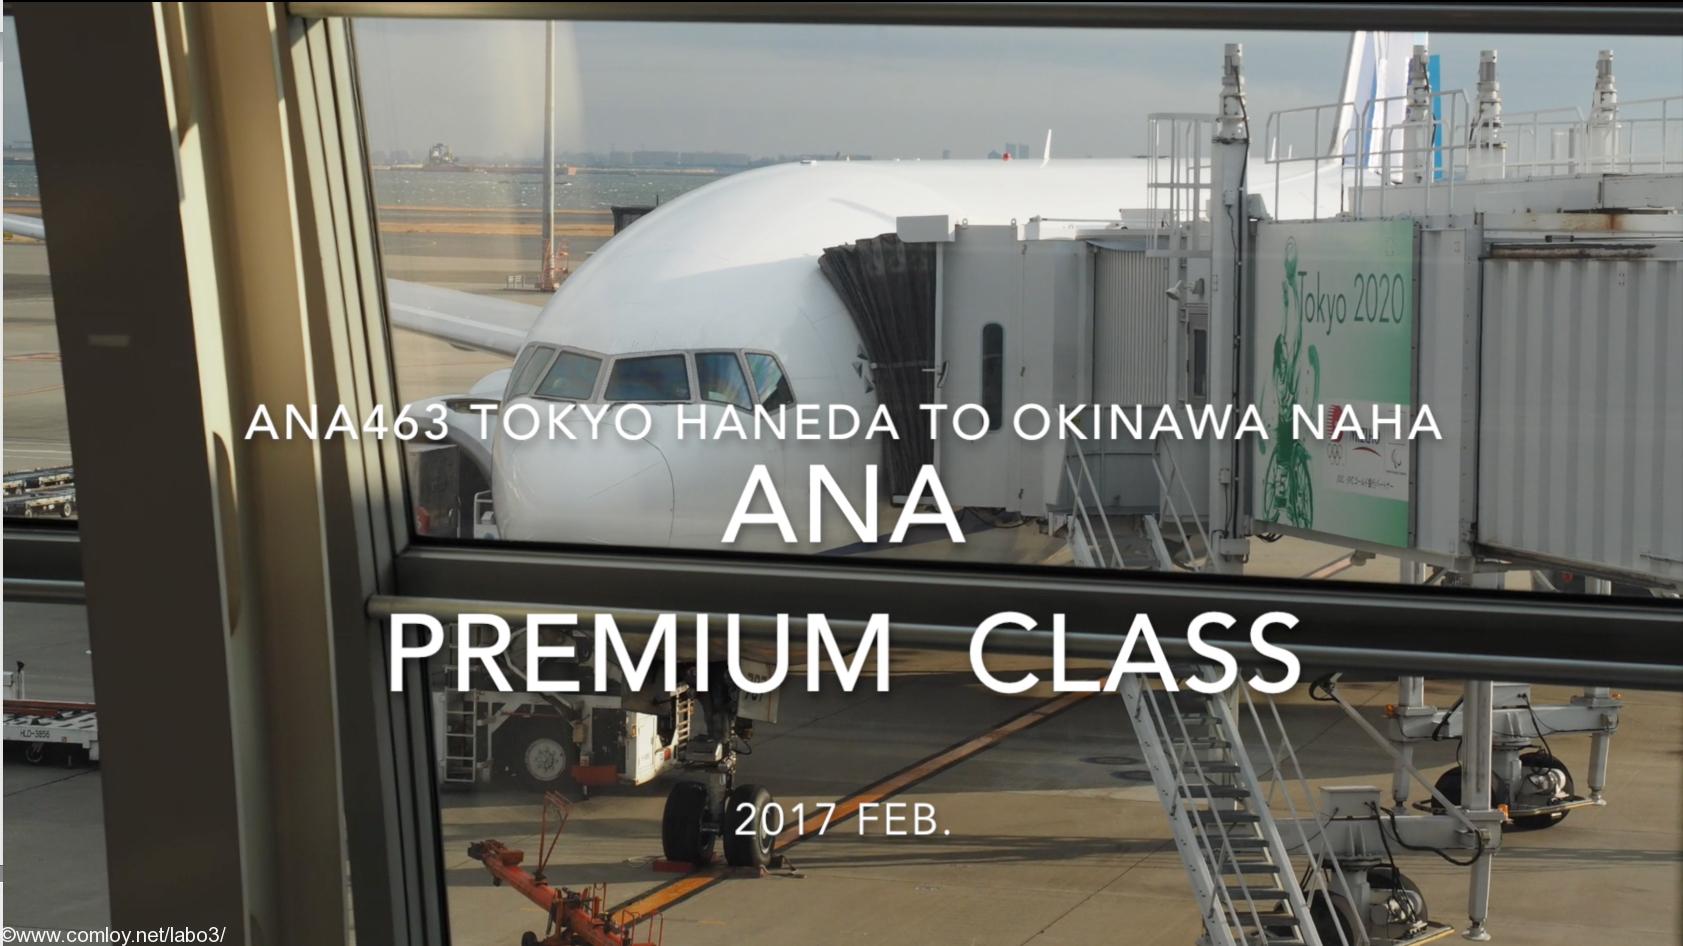 【Flight Report】ANA Premium Class ANA463 TOKYO HANEDA to OKINAWA NAHA 2017・02 全日空プレミアムクラス搭乗記